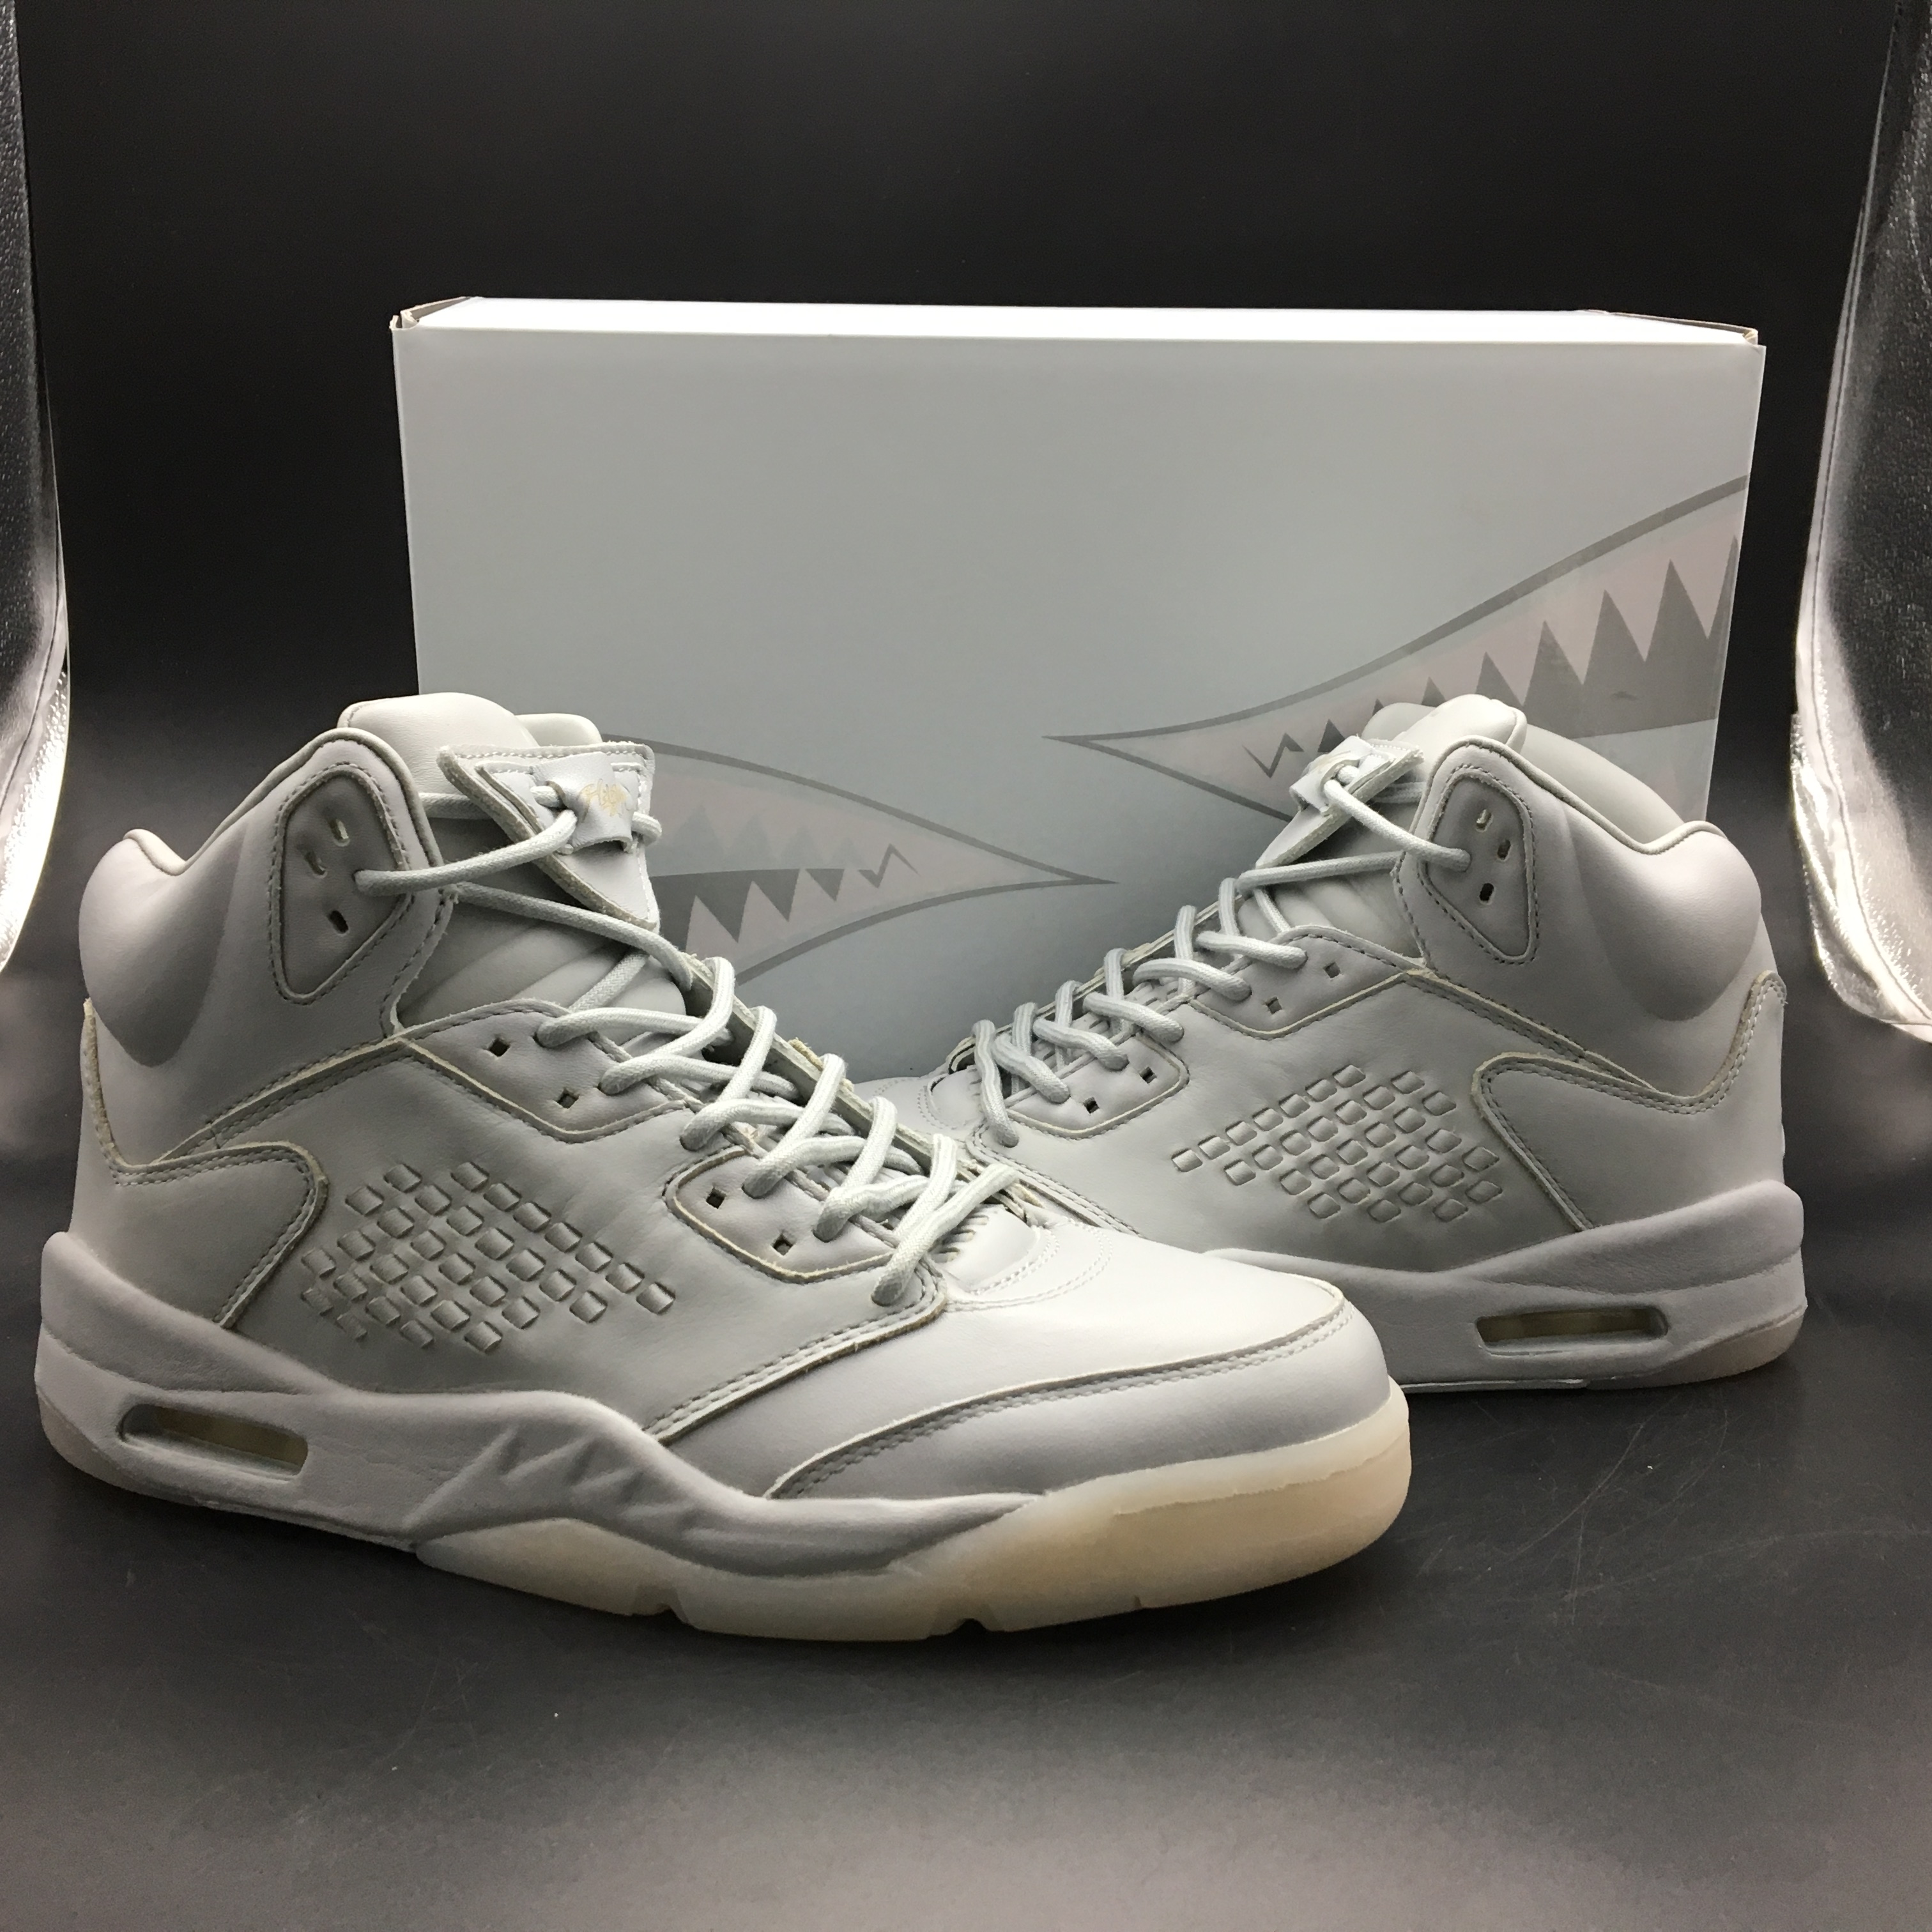 Air Jordan 5 Premium Pinnacle Grey Shoes - Click Image to Close